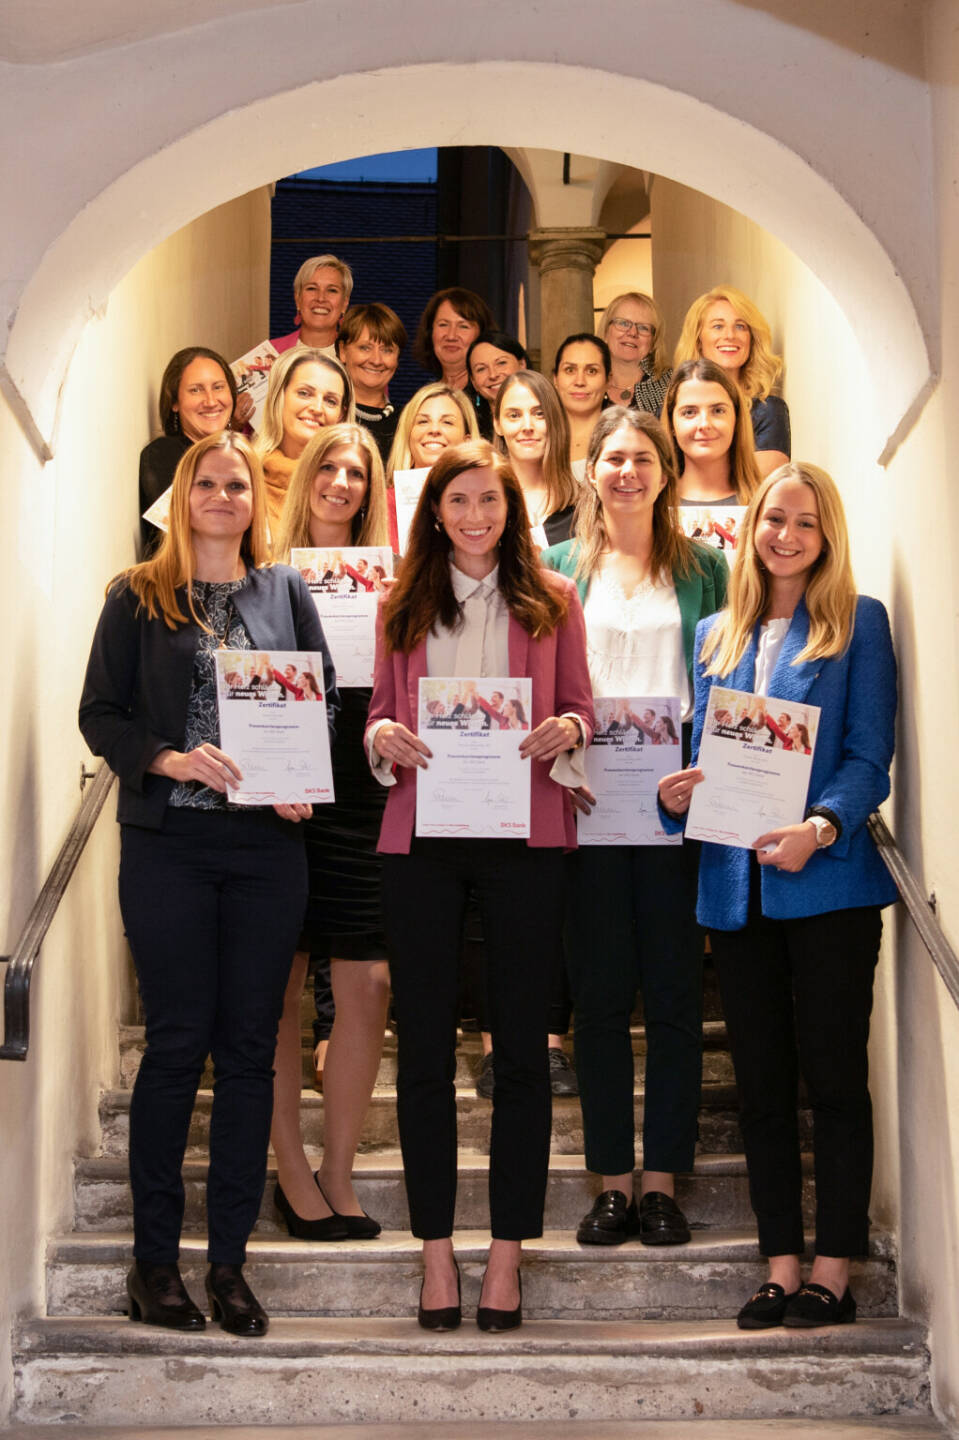 BKS Bank feierte den erfolgreichen Abschluss des 5. Frauenkarriereprogramms. Foto: Caroline Knauder